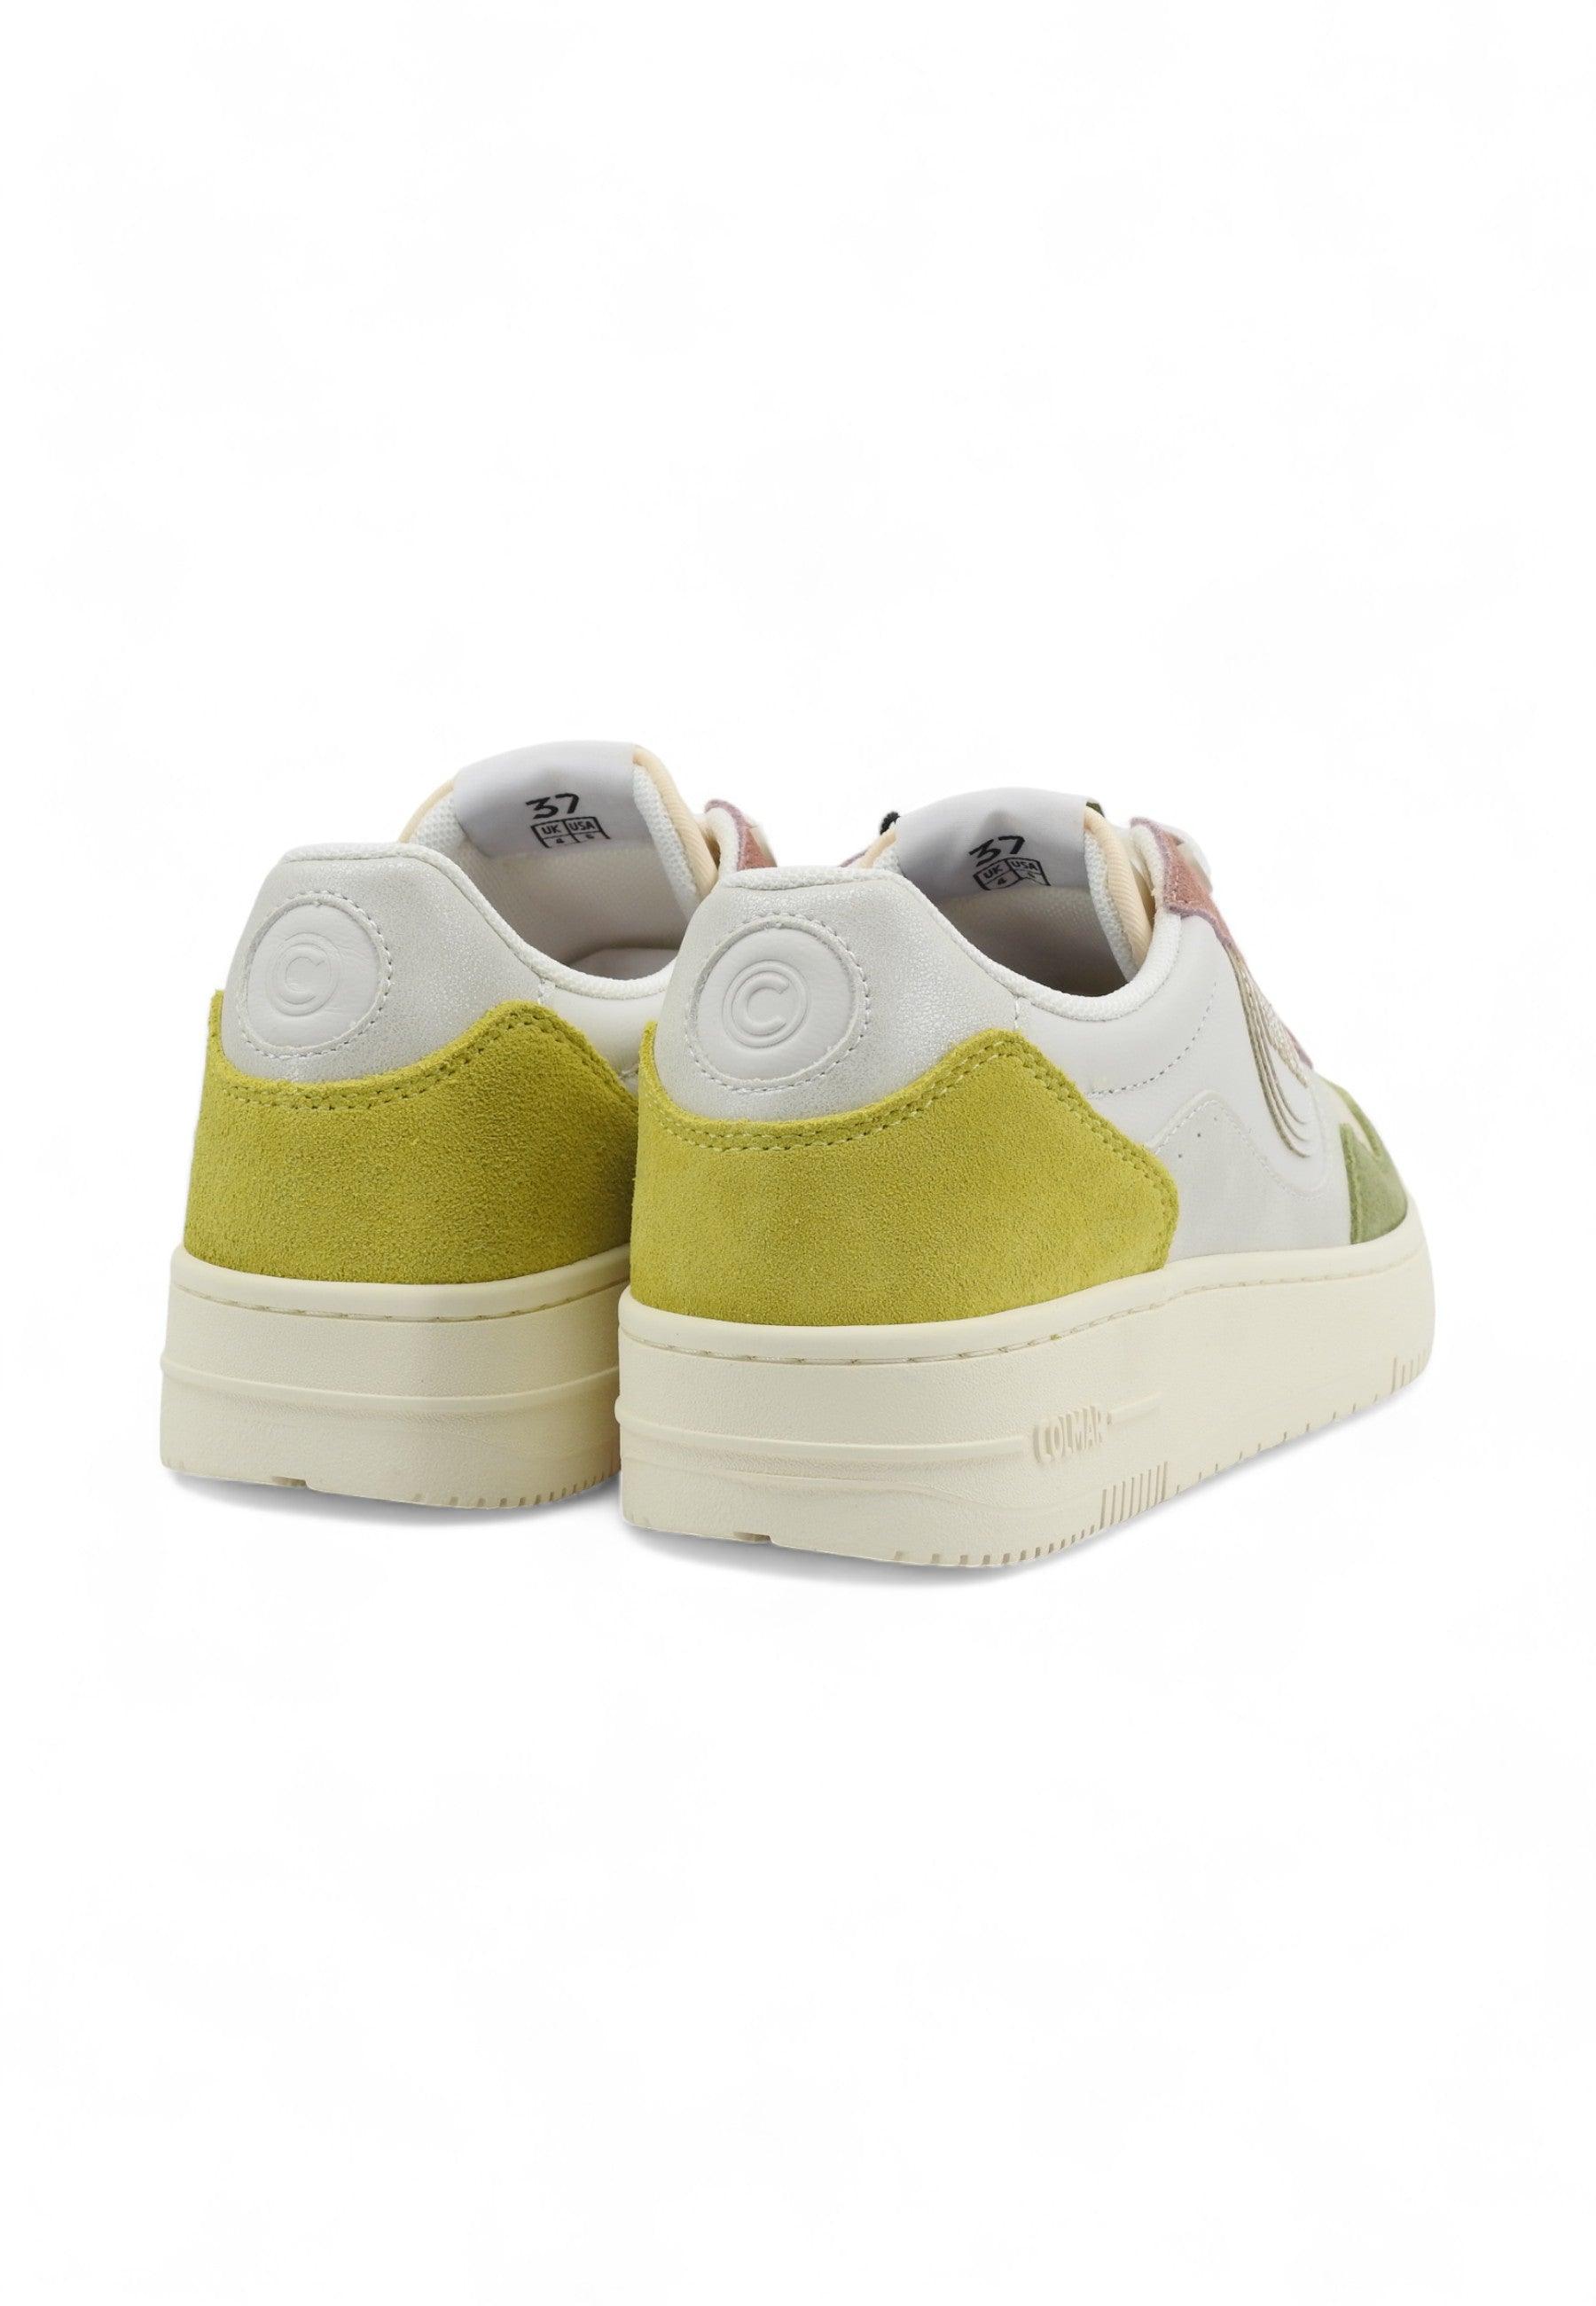 COLMAR Sneaker Donna White Multicolor AUSTIN BLISS - Sandrini Calzature e Abbigliamento